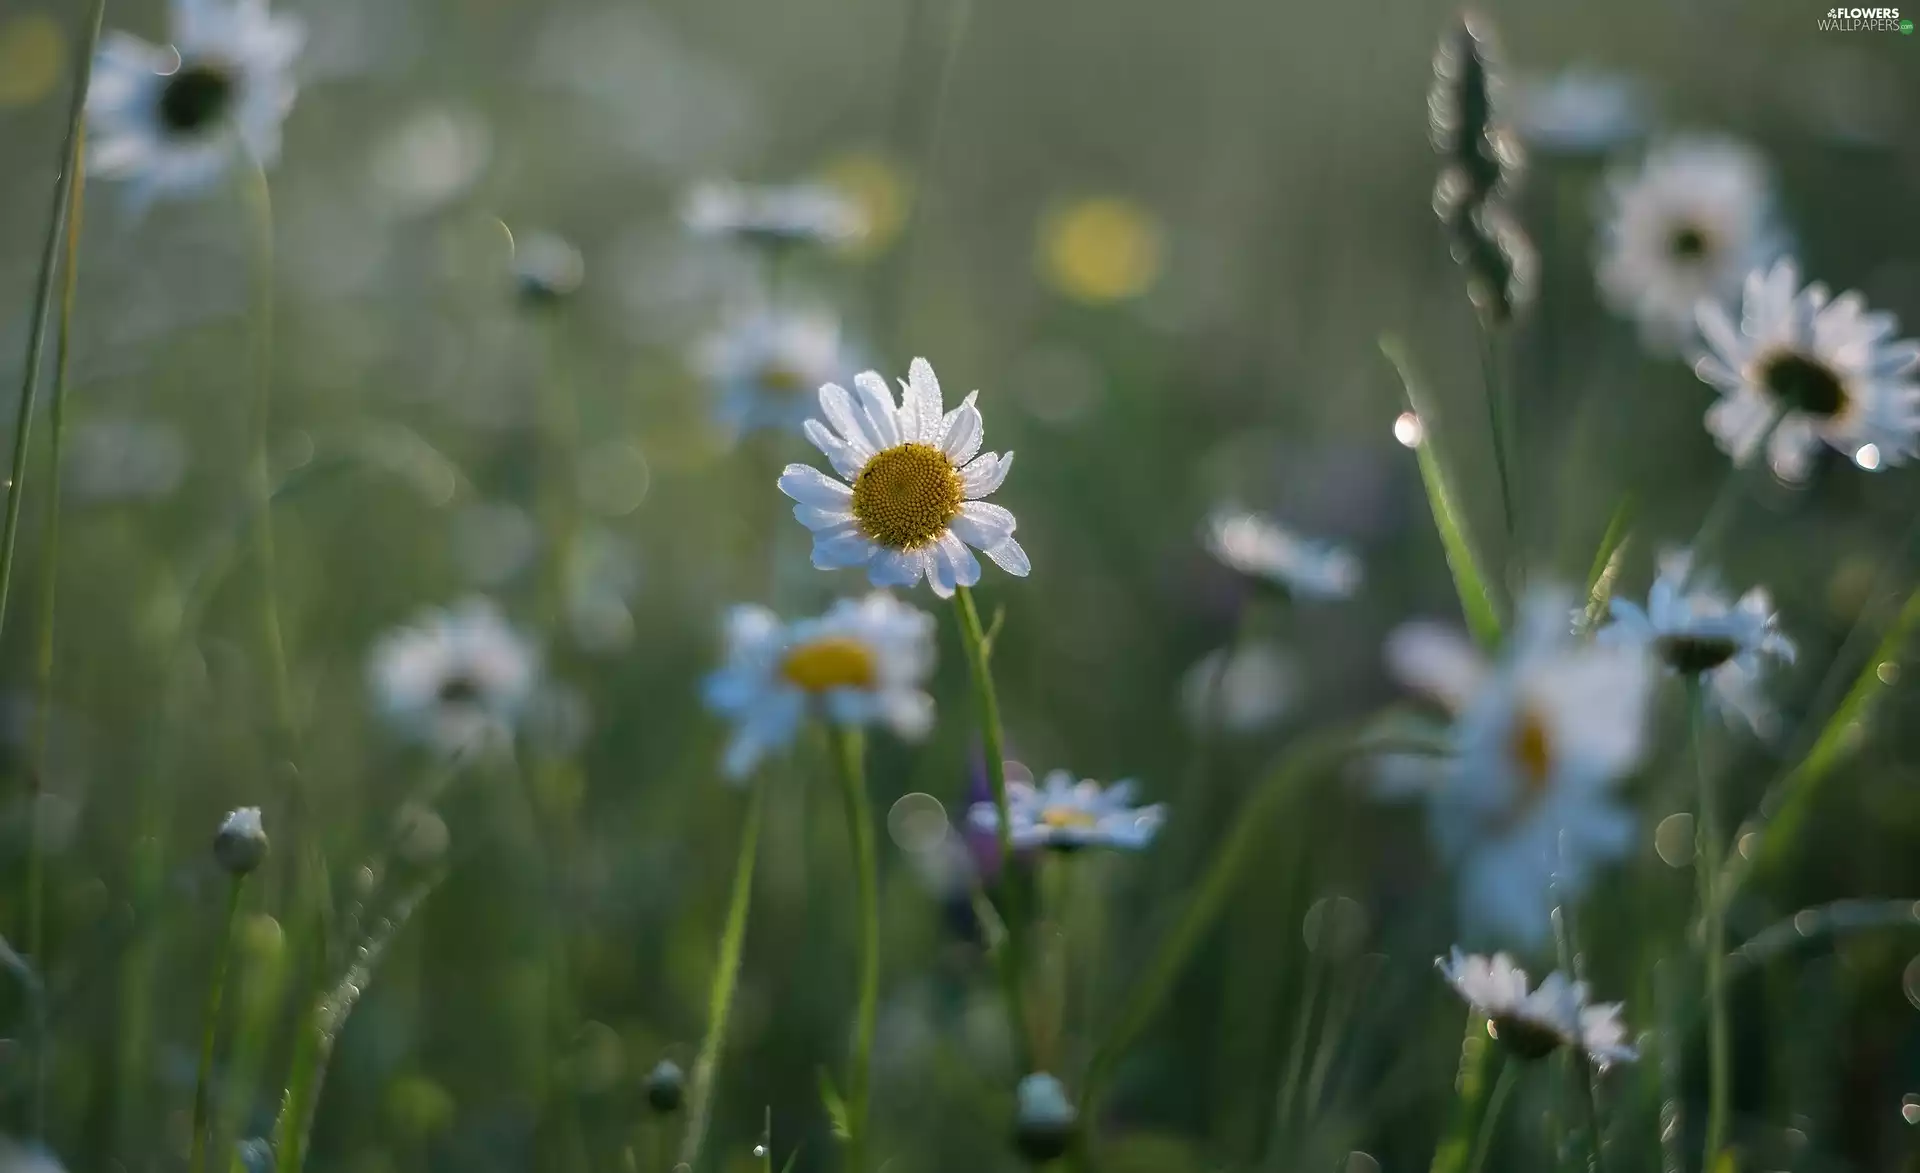 Flowers, grass, blur, daisy